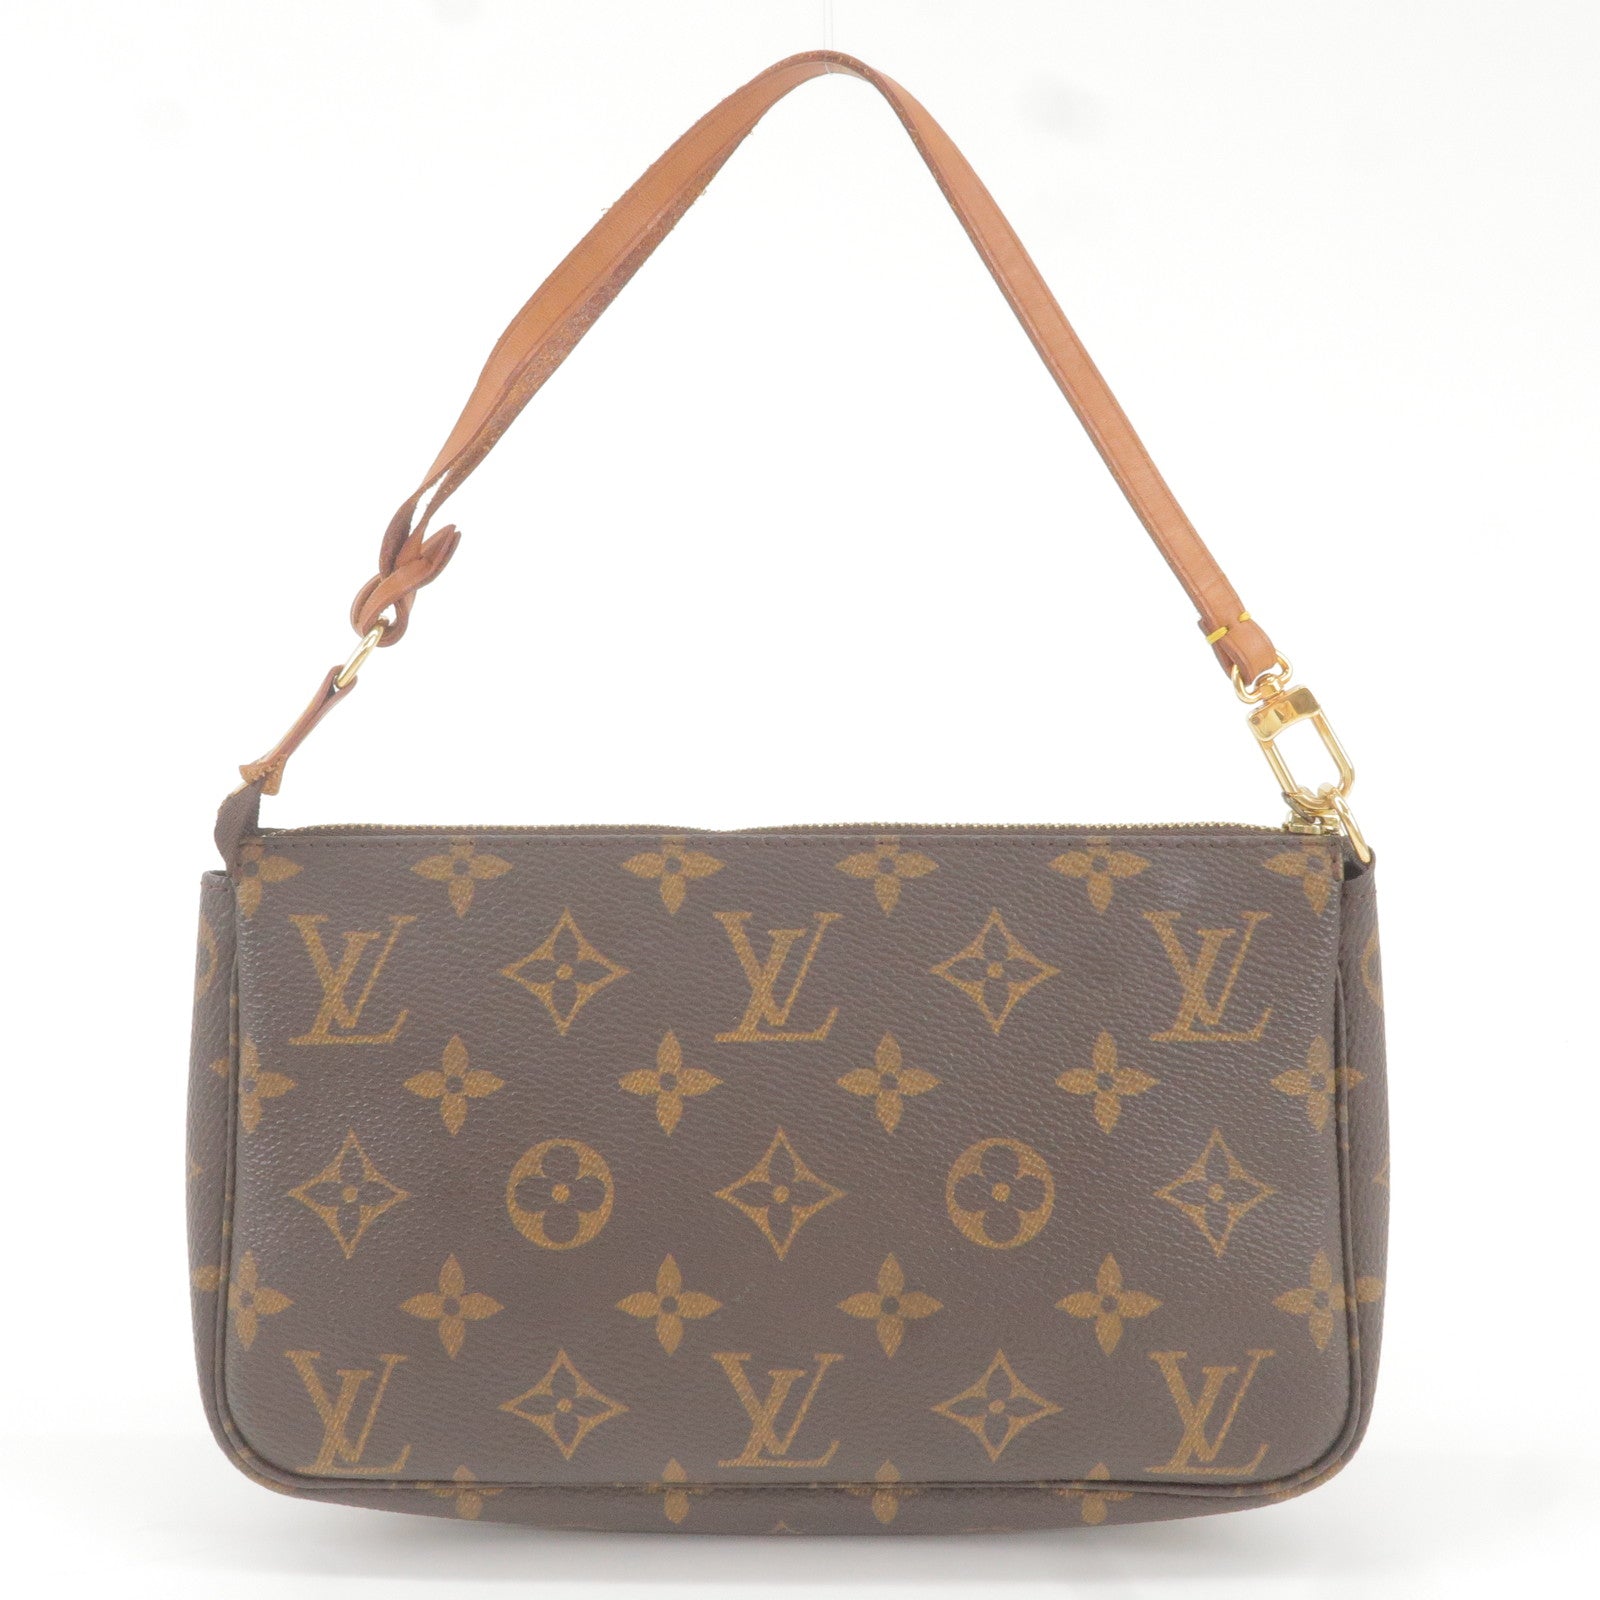 Accessoires - M51980 – Louis Vuitton s Game On collection - Monogram -  Vuitton - Bag - Pochette - Hand - beyonce virgil abloh jeff koons louis  vuitton custom bag - Louis